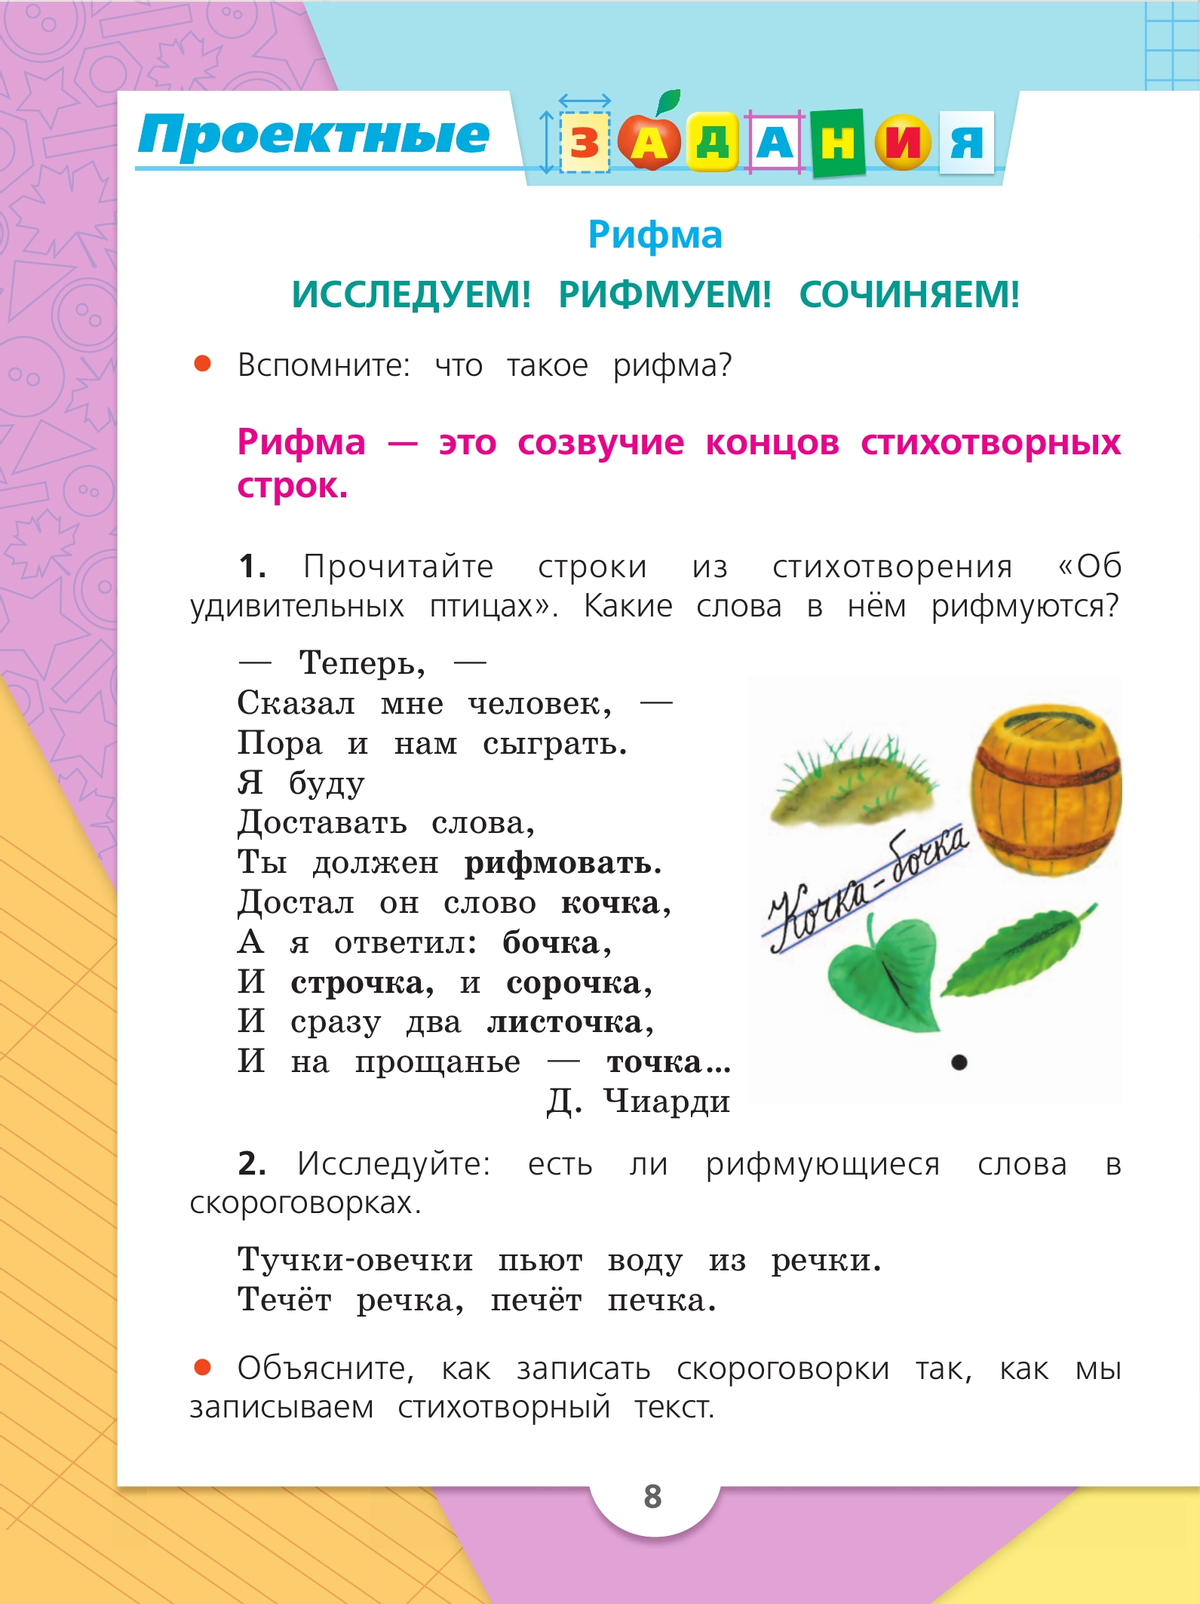 Русский язык. 2 класс. Учебник. В 2 ч. Часть 2 8